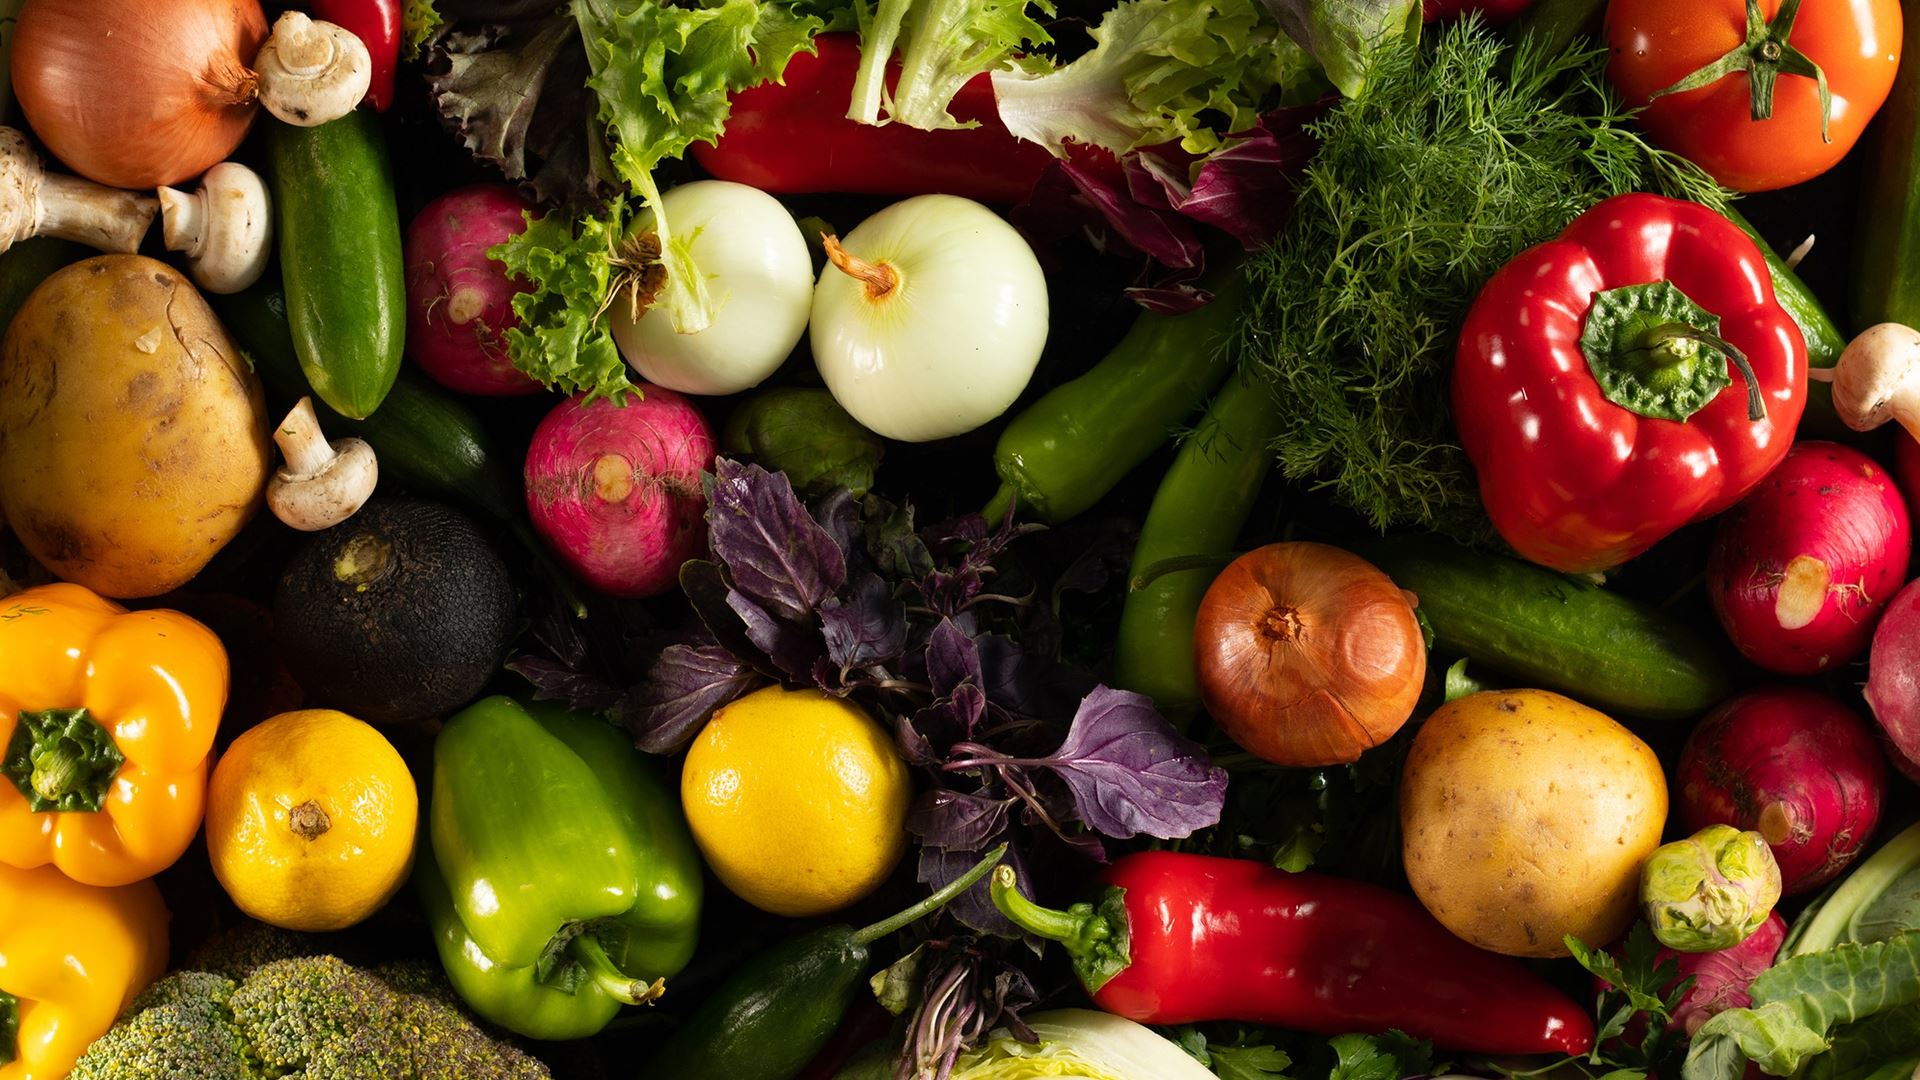 Learn Vegetables in Serbian Language - Big list of veggies